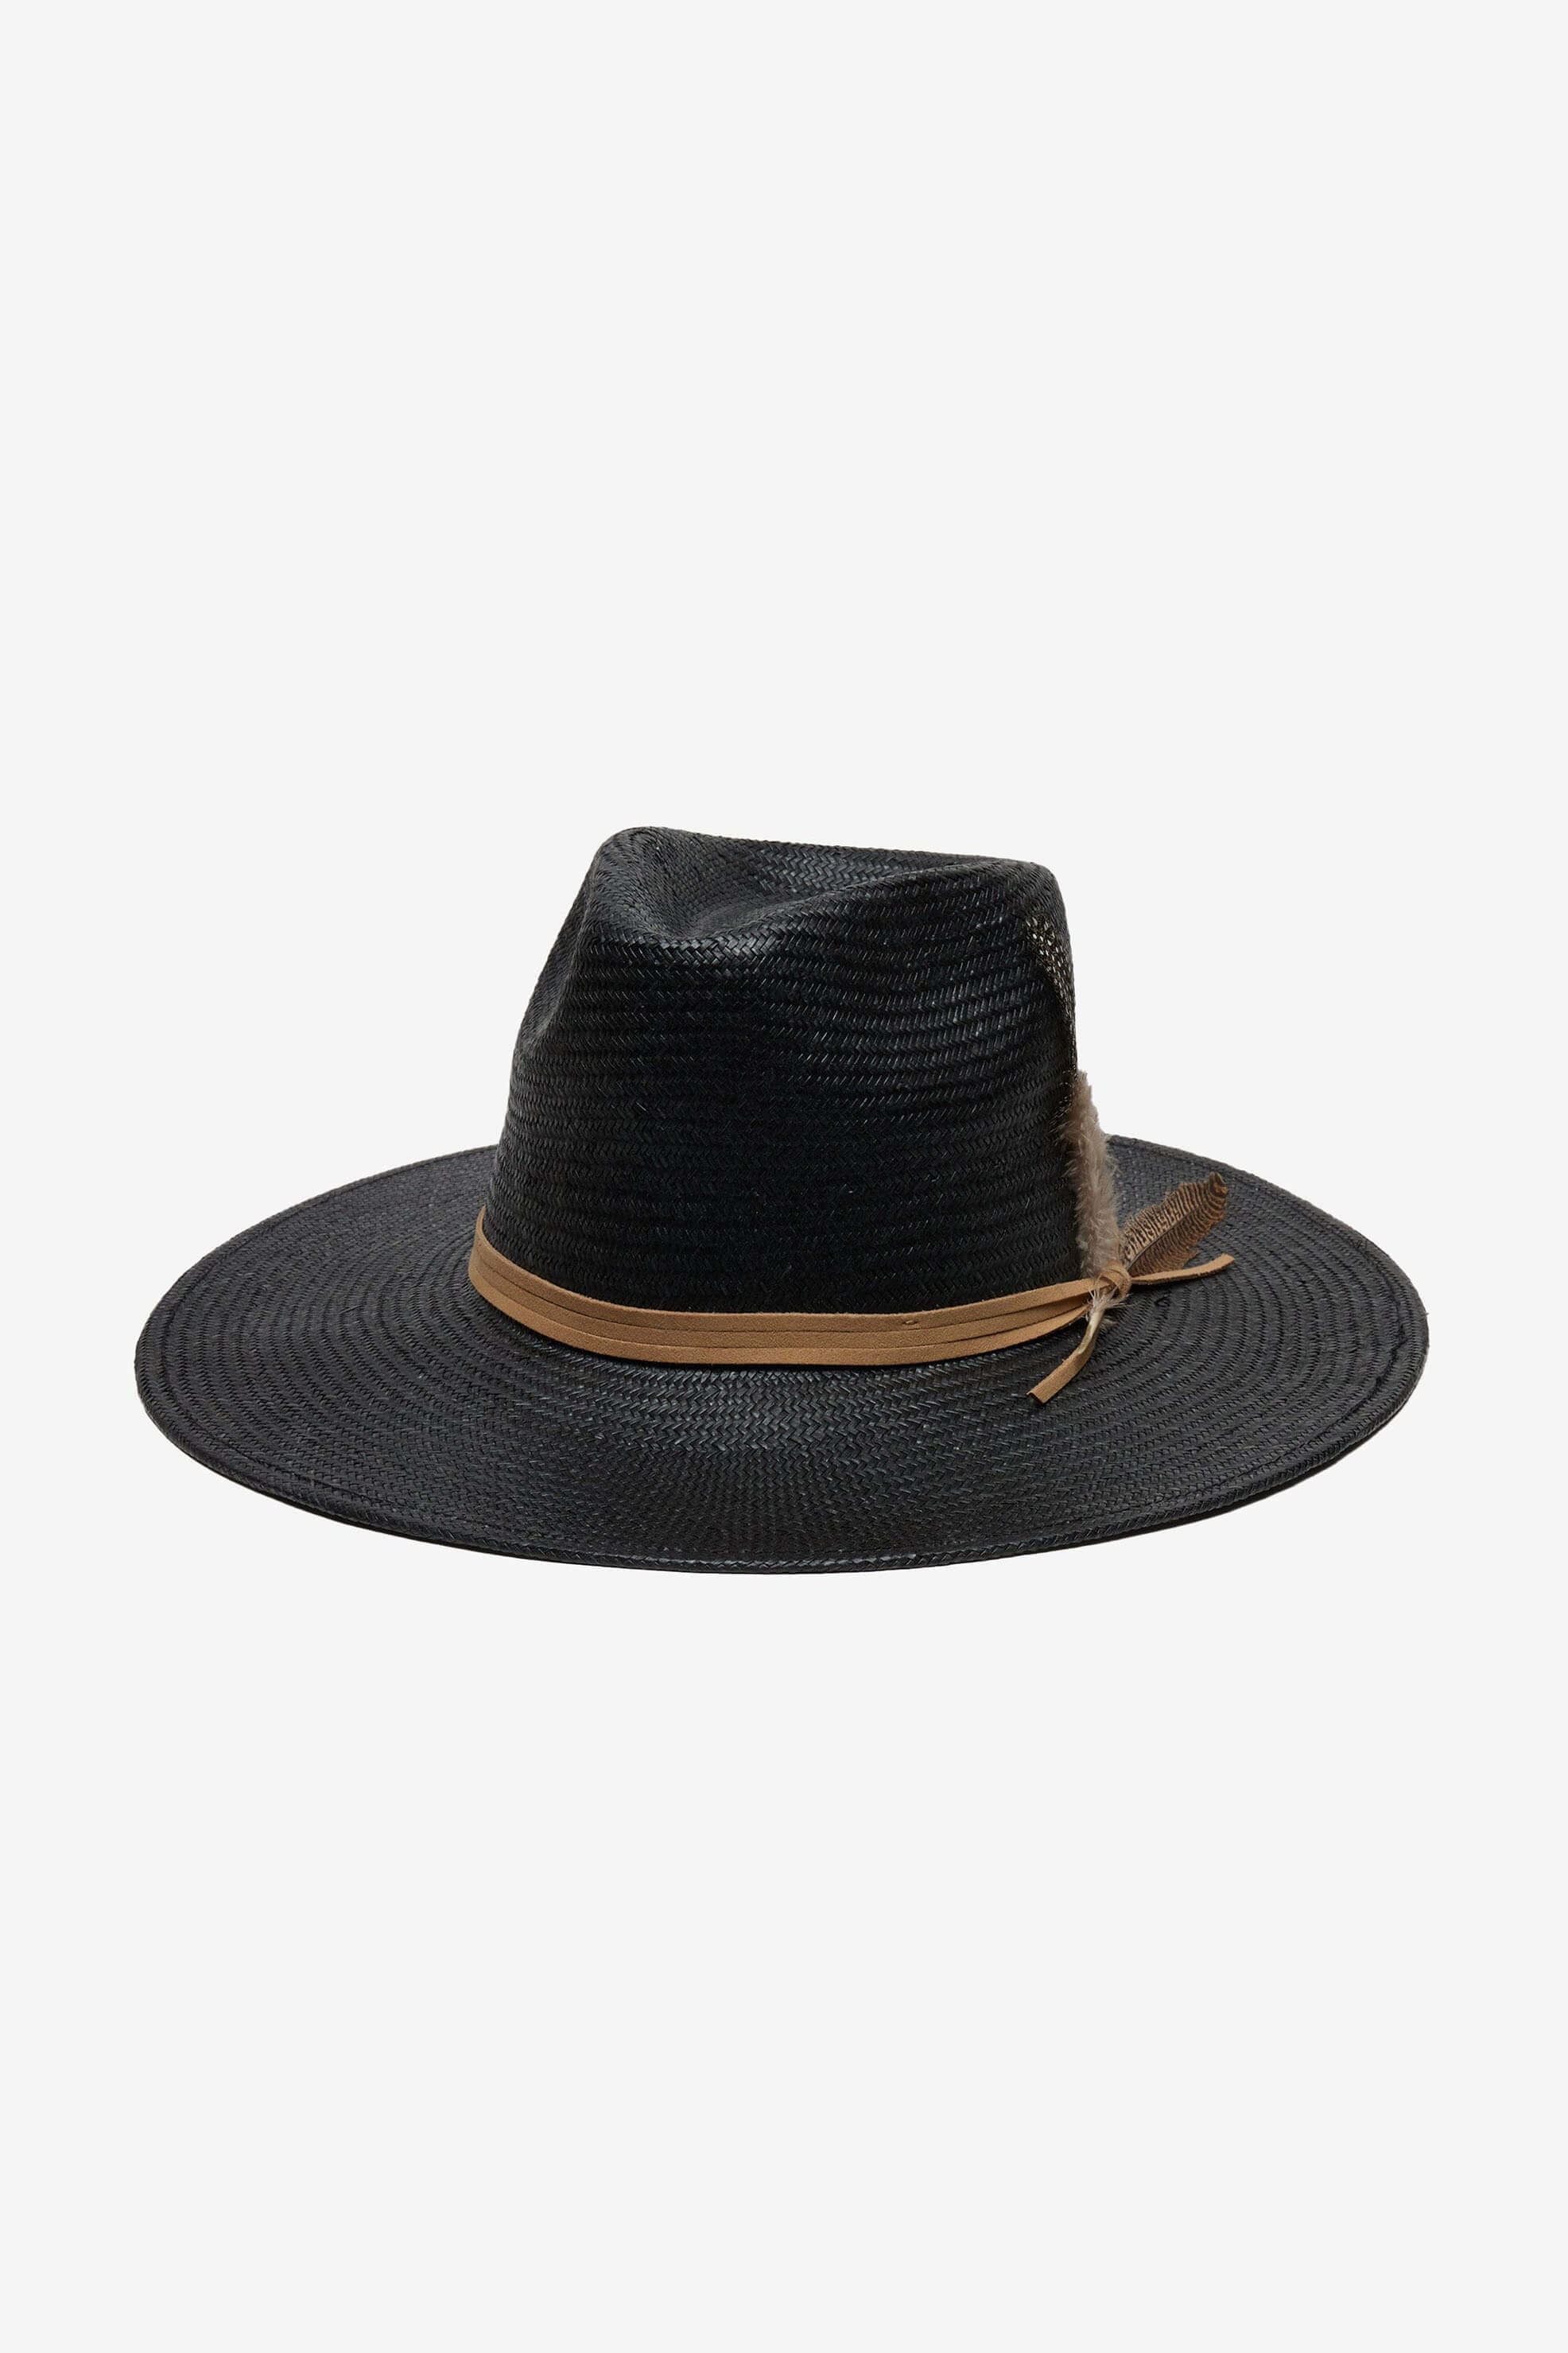 Wyeth Valencia Hat in black